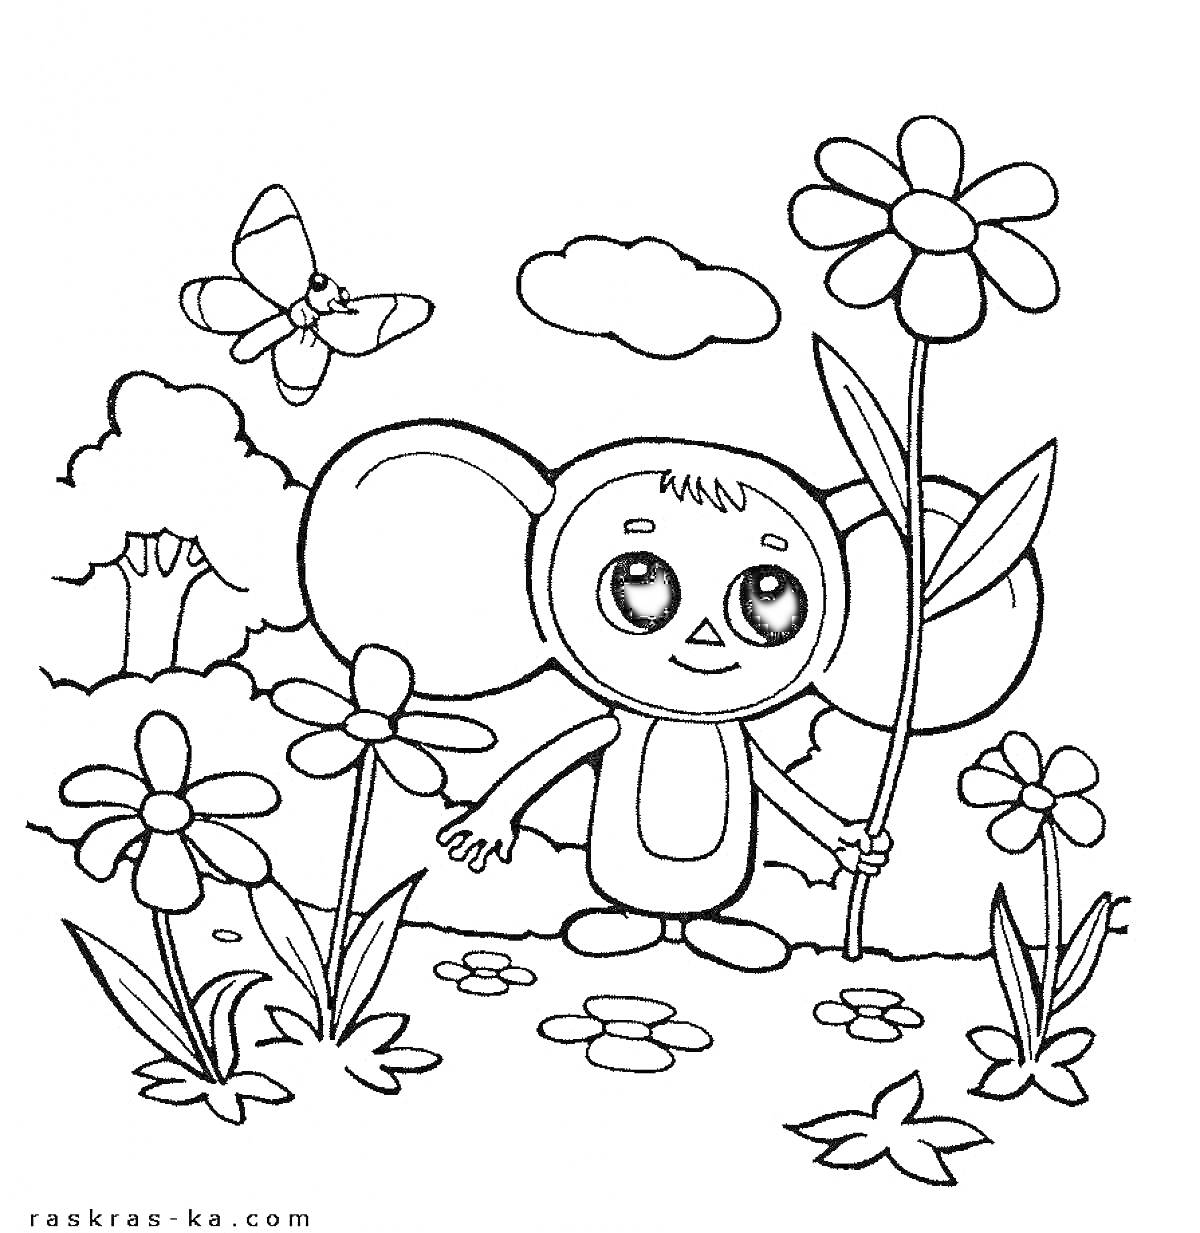 Раскраска Чебурашка держит цветок и стоит среди цветов, вокруг цветы, летает бабочка, на заднем плане кусты